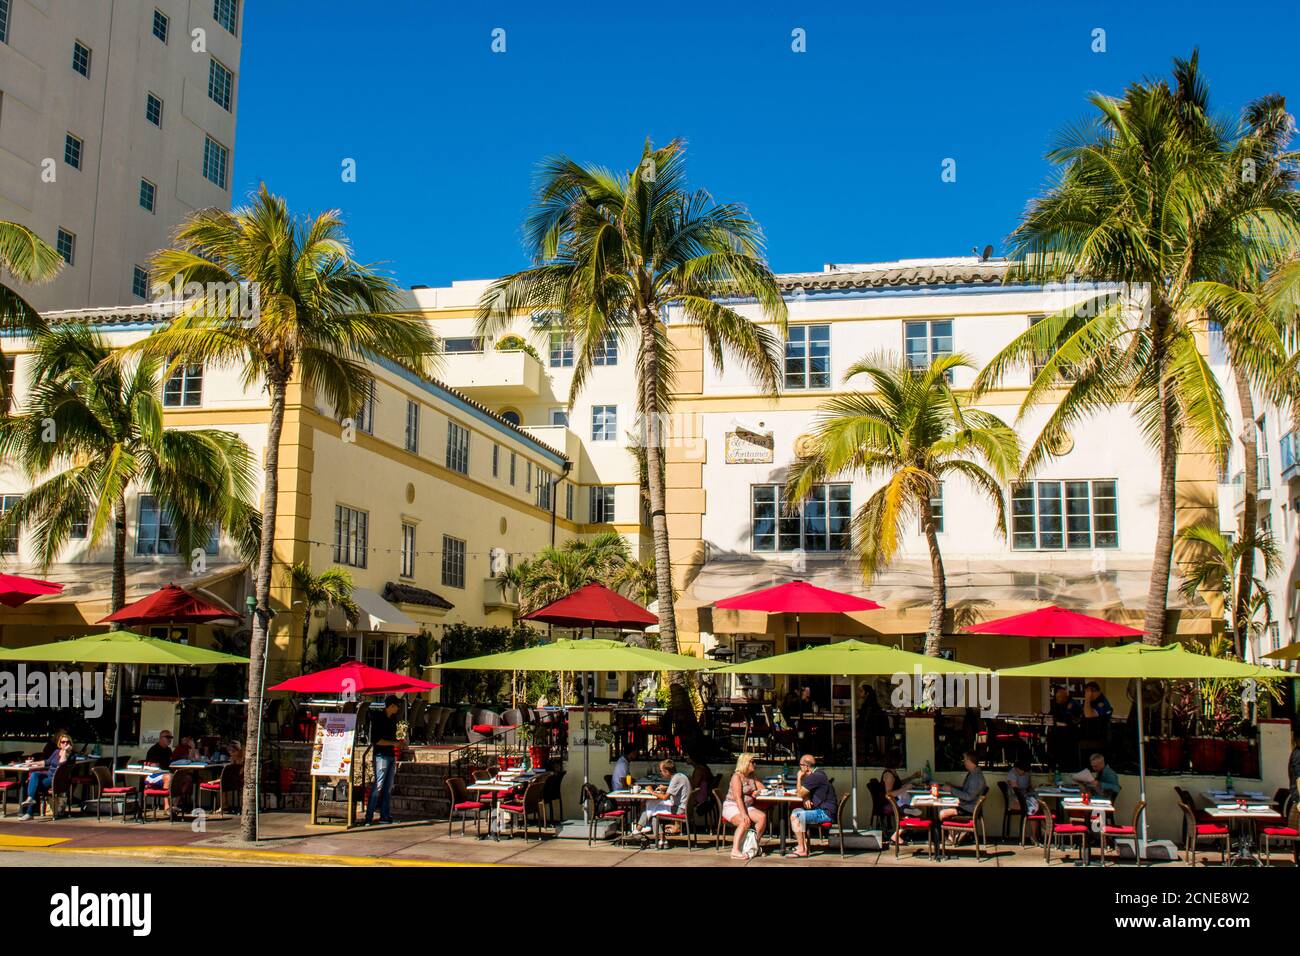 Escenas callejera a lo largo de Ocean Drive, South Beach district, Miami, Florida, Estados Unidos de América Foto de stock